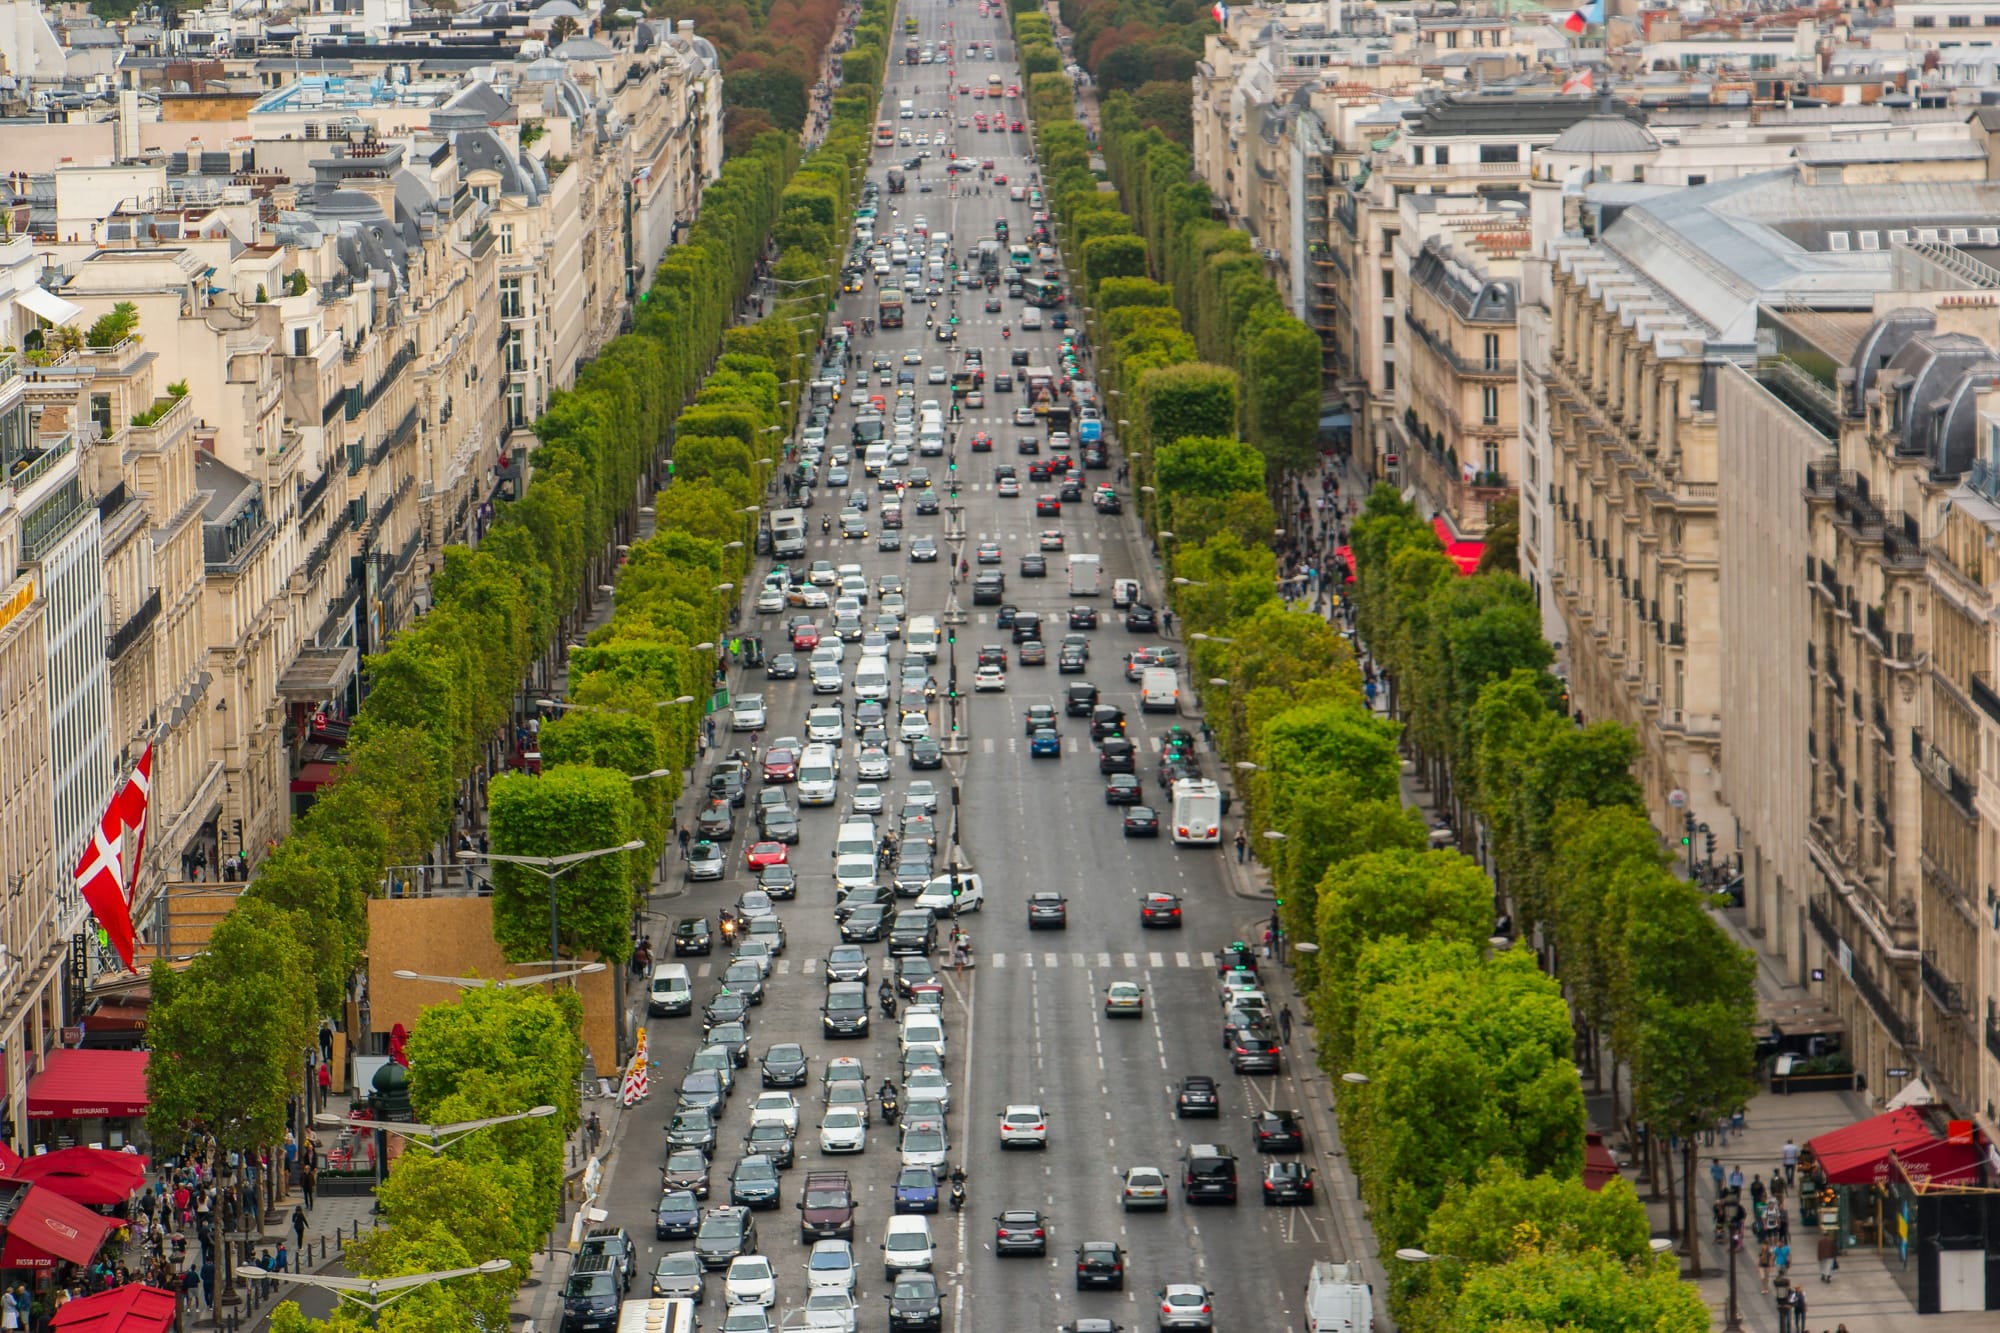 Champs-Élysées Avenue in Paris, France